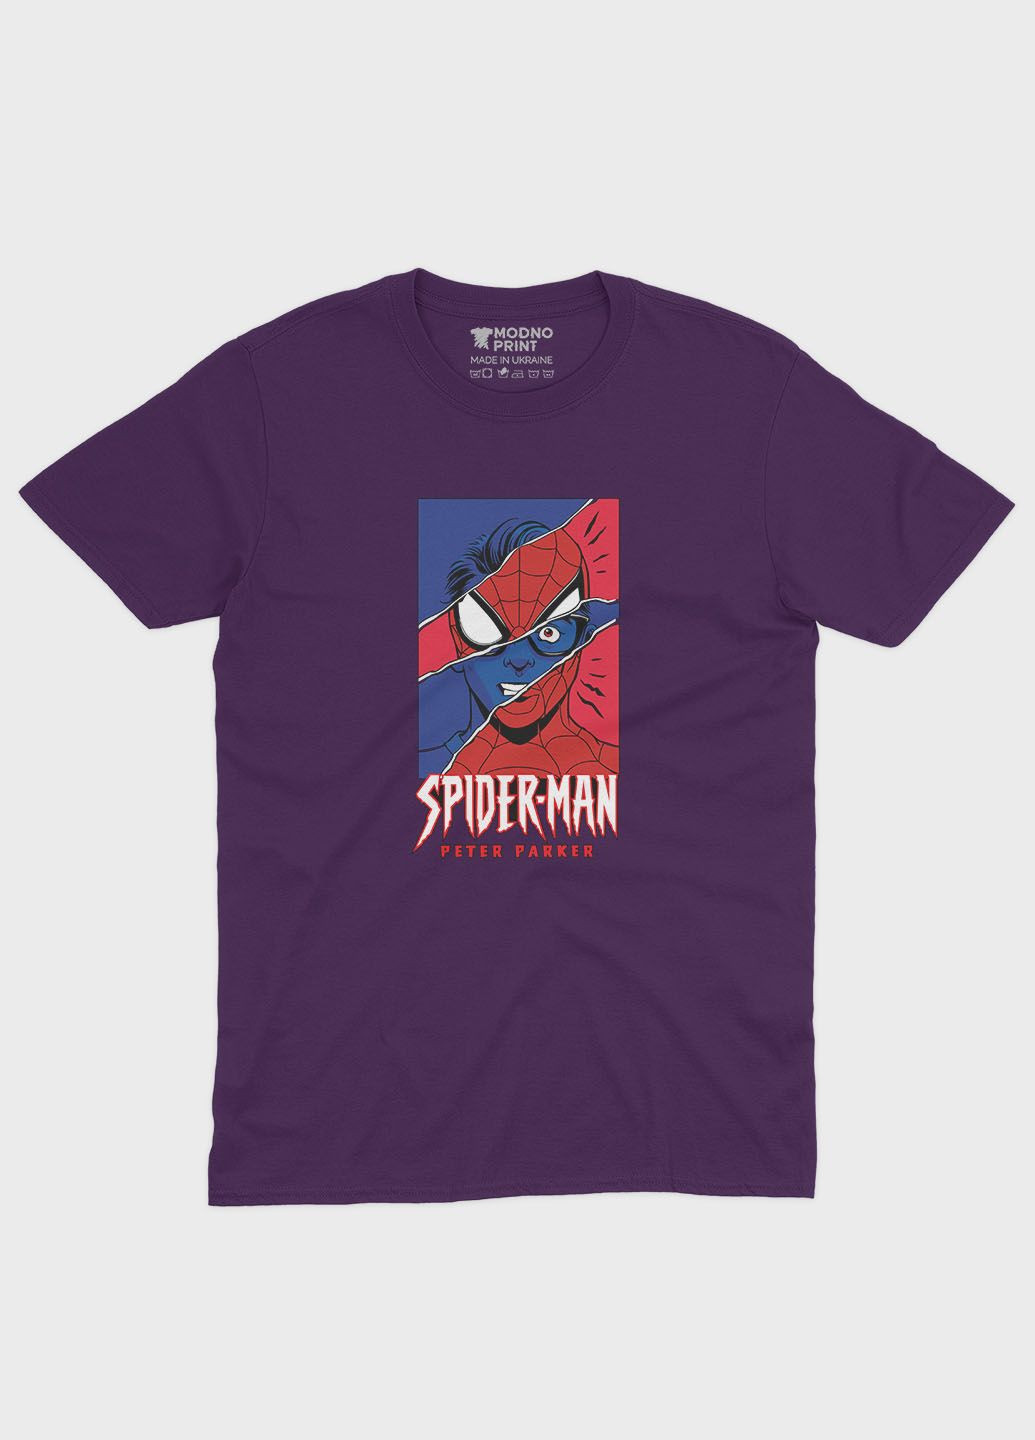 Фіолетова демісезонна футболка для дівчинки з принтом супергероя - людина-павук (ts001-1-dby-006-014-032-g) Modno